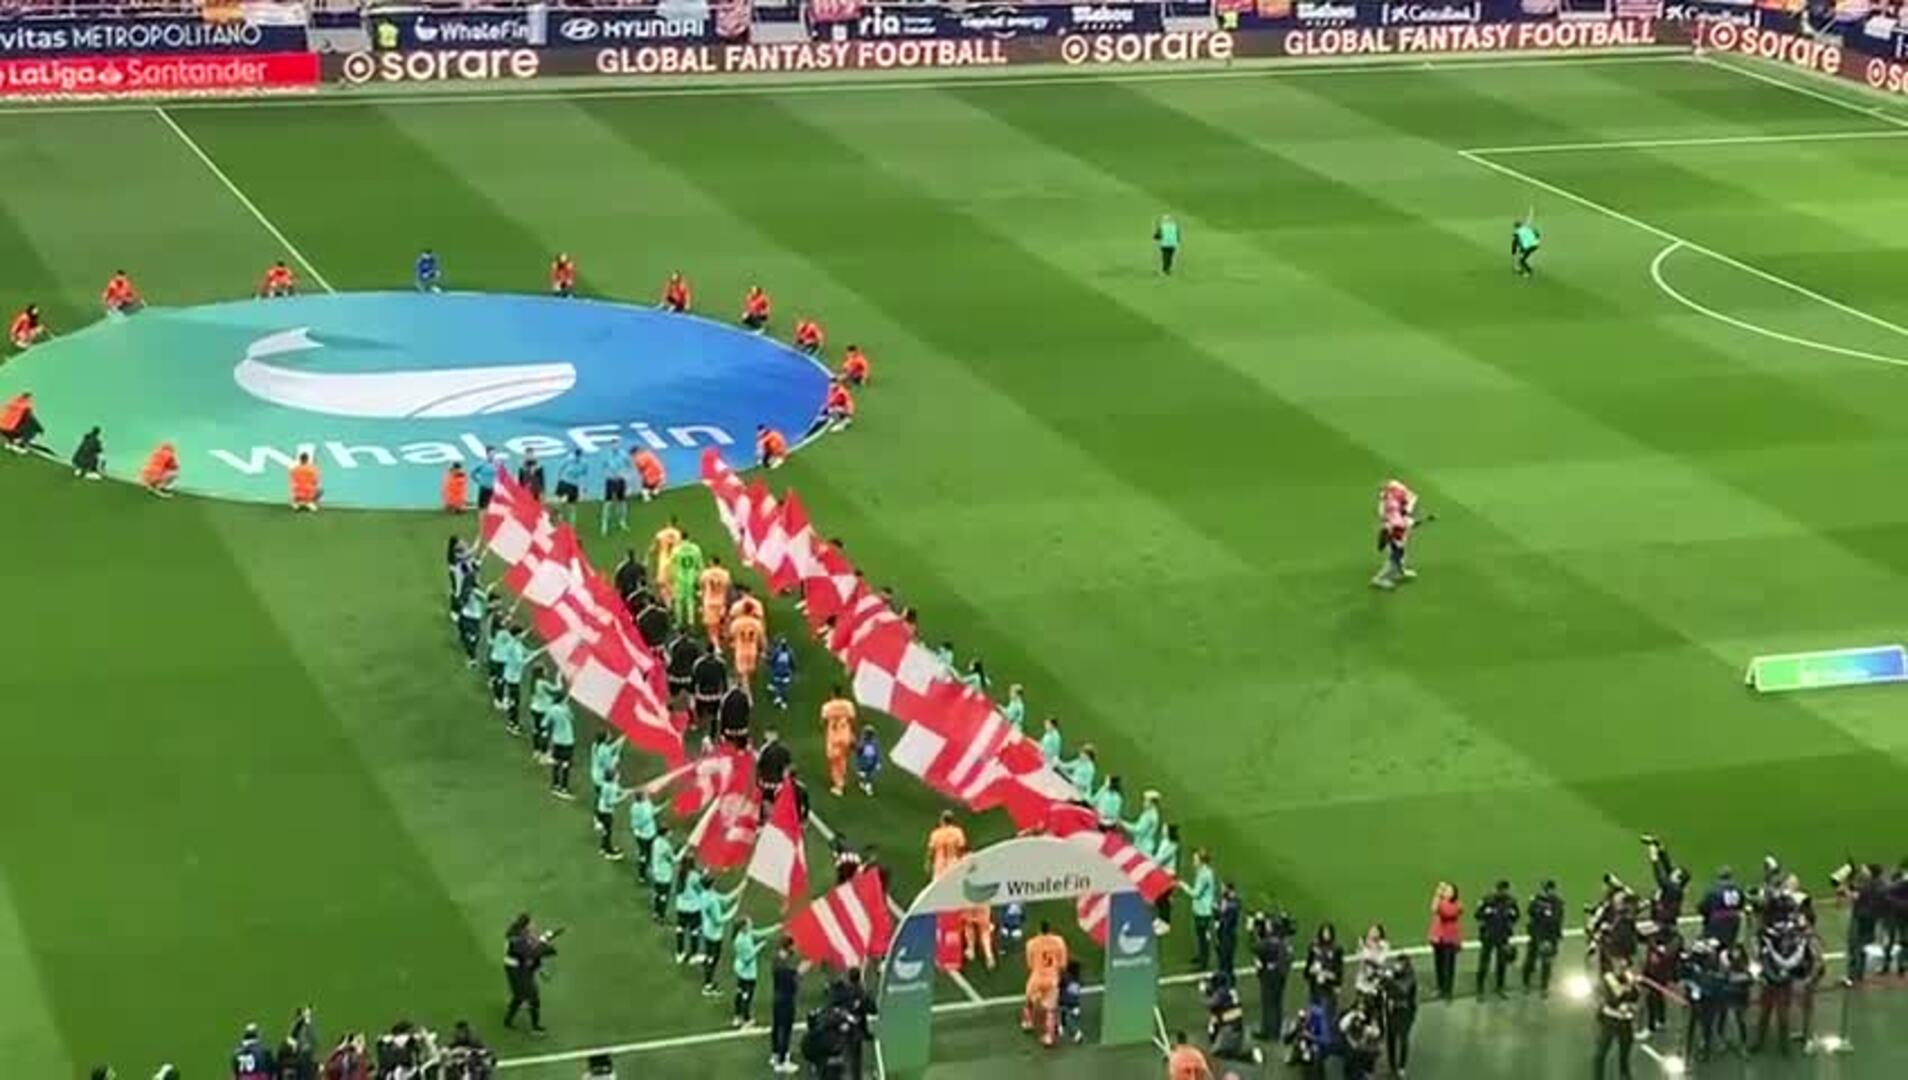 Pasillo de banderas rojiblancas para Athletic y Atlético